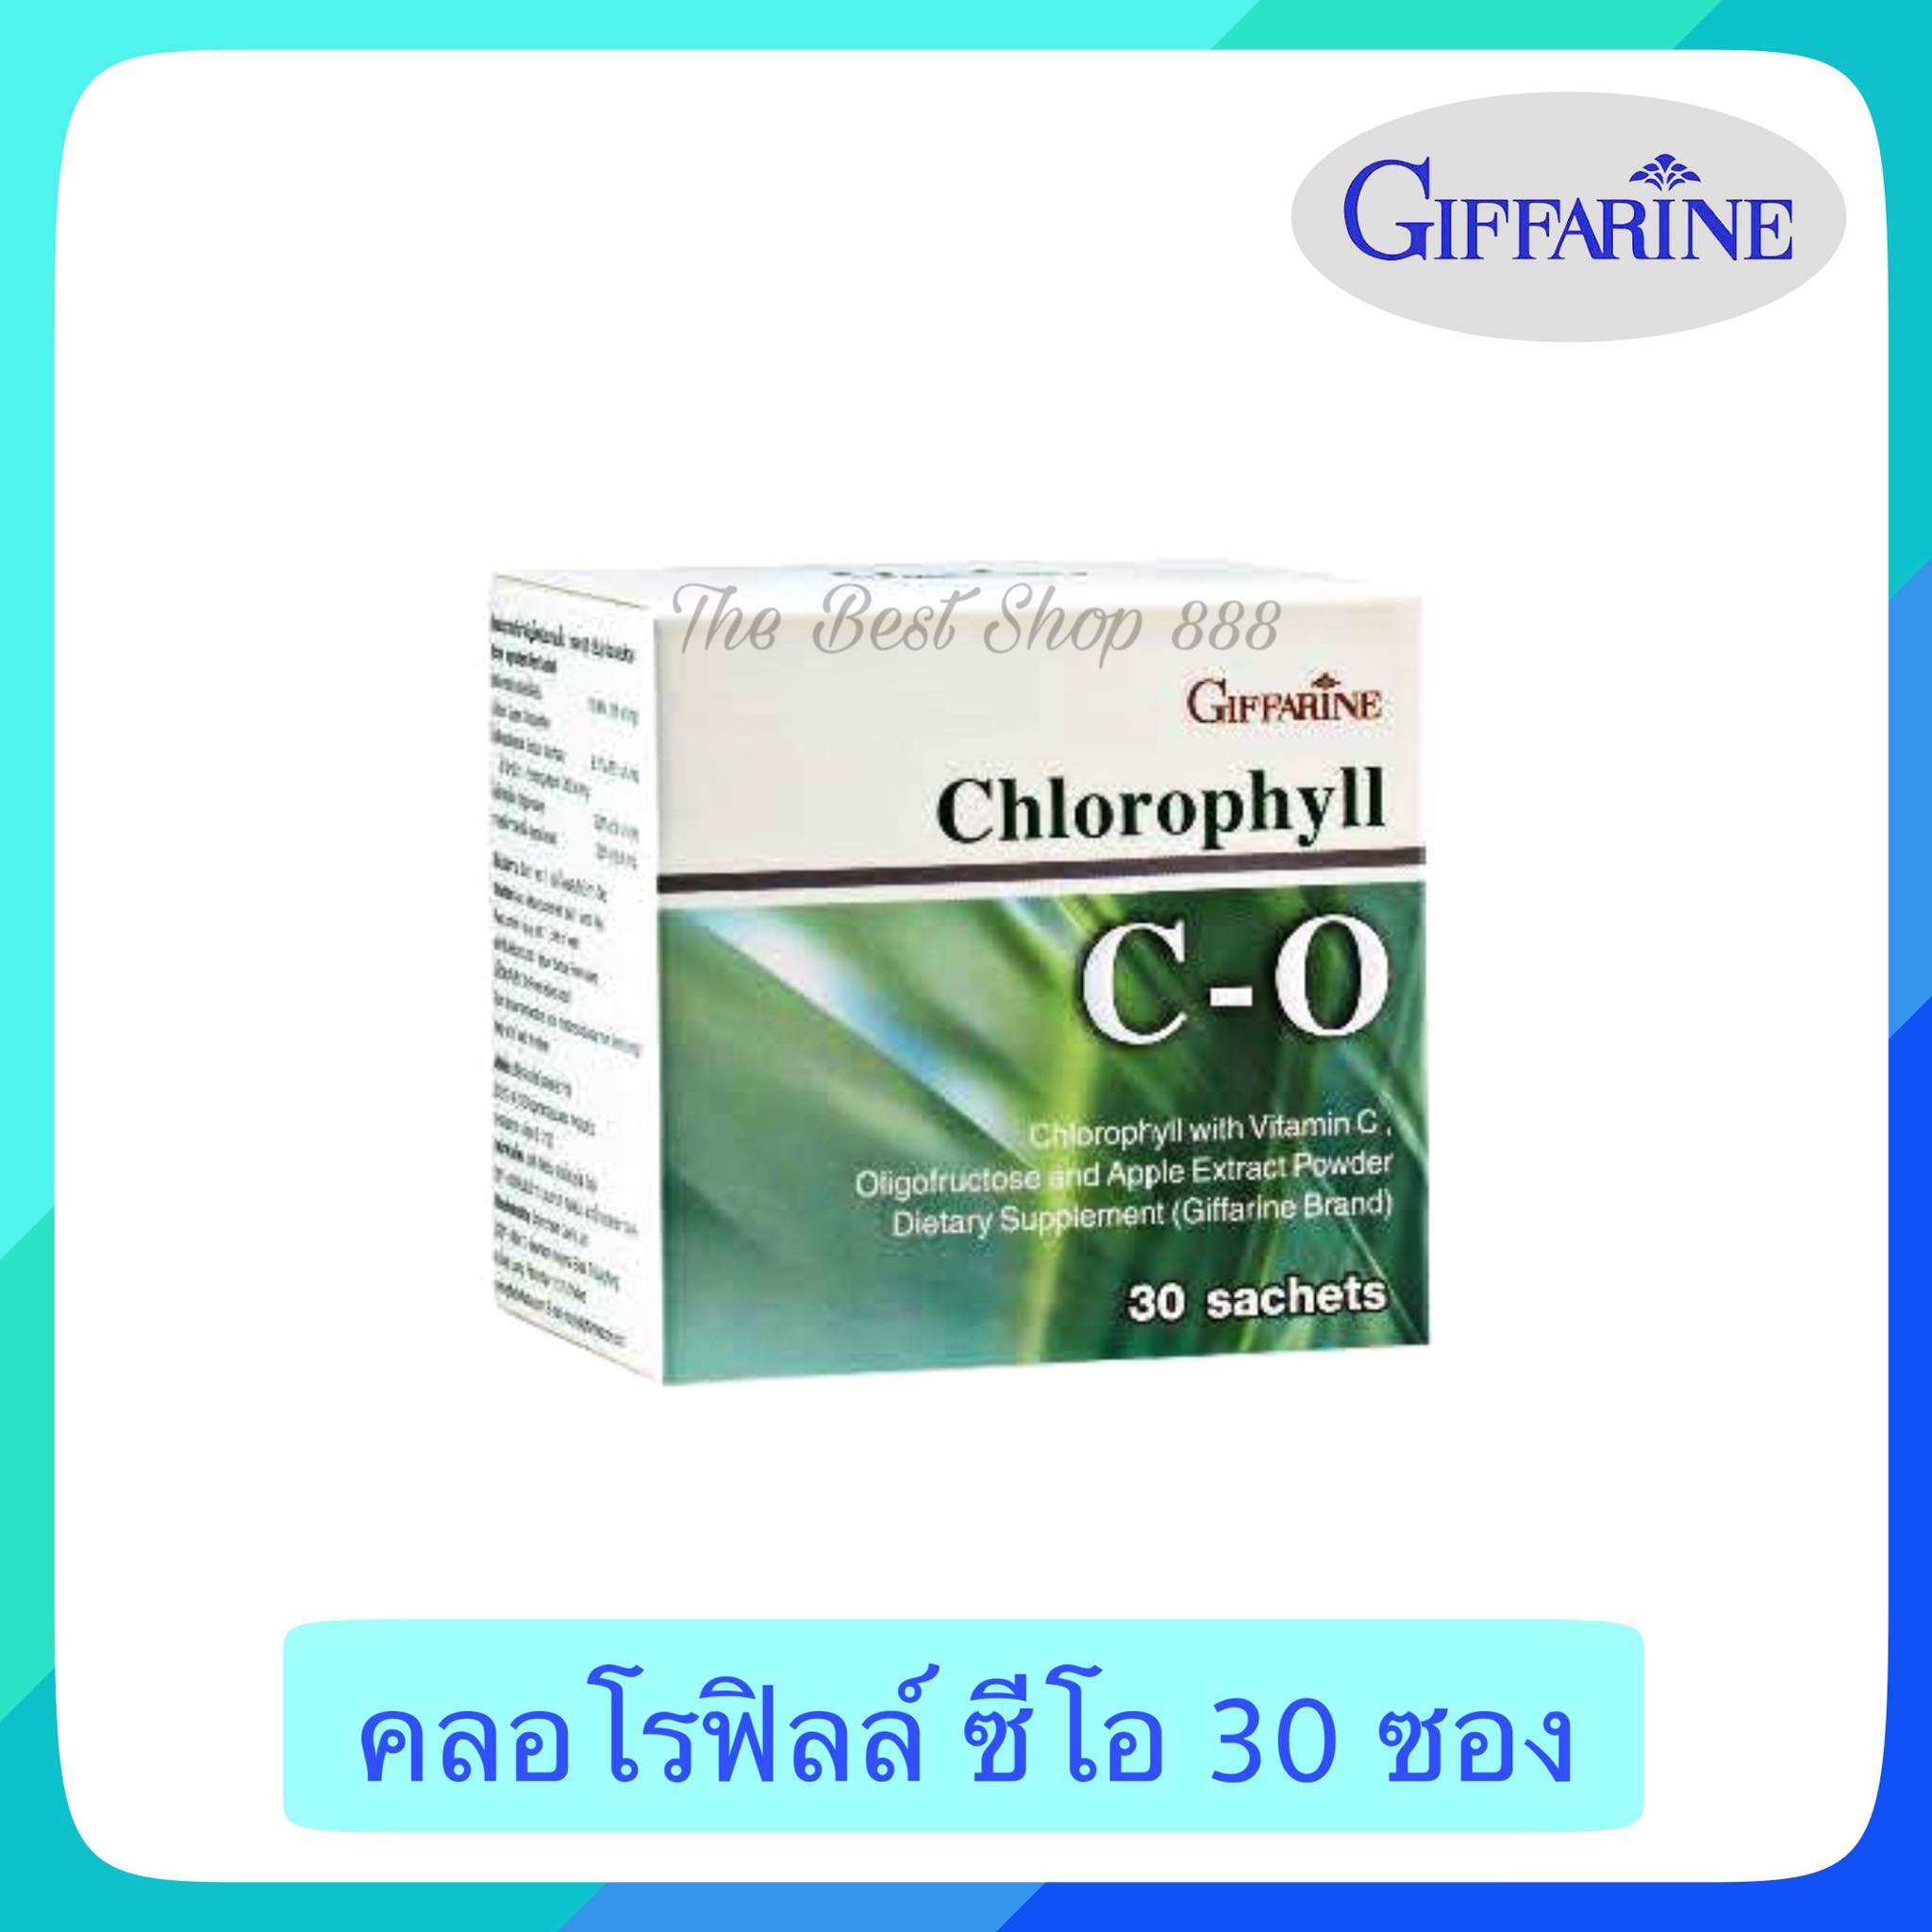 คลอโรฟิลล์ คลอโรฟิล ผสมวิตามินซี สารพิษ ดีท็อกซ์ลำไส้ คลอโรฟิลล์ผง DETOX CHLOROPHYLL CO (1กล่อง 30 ซอง)